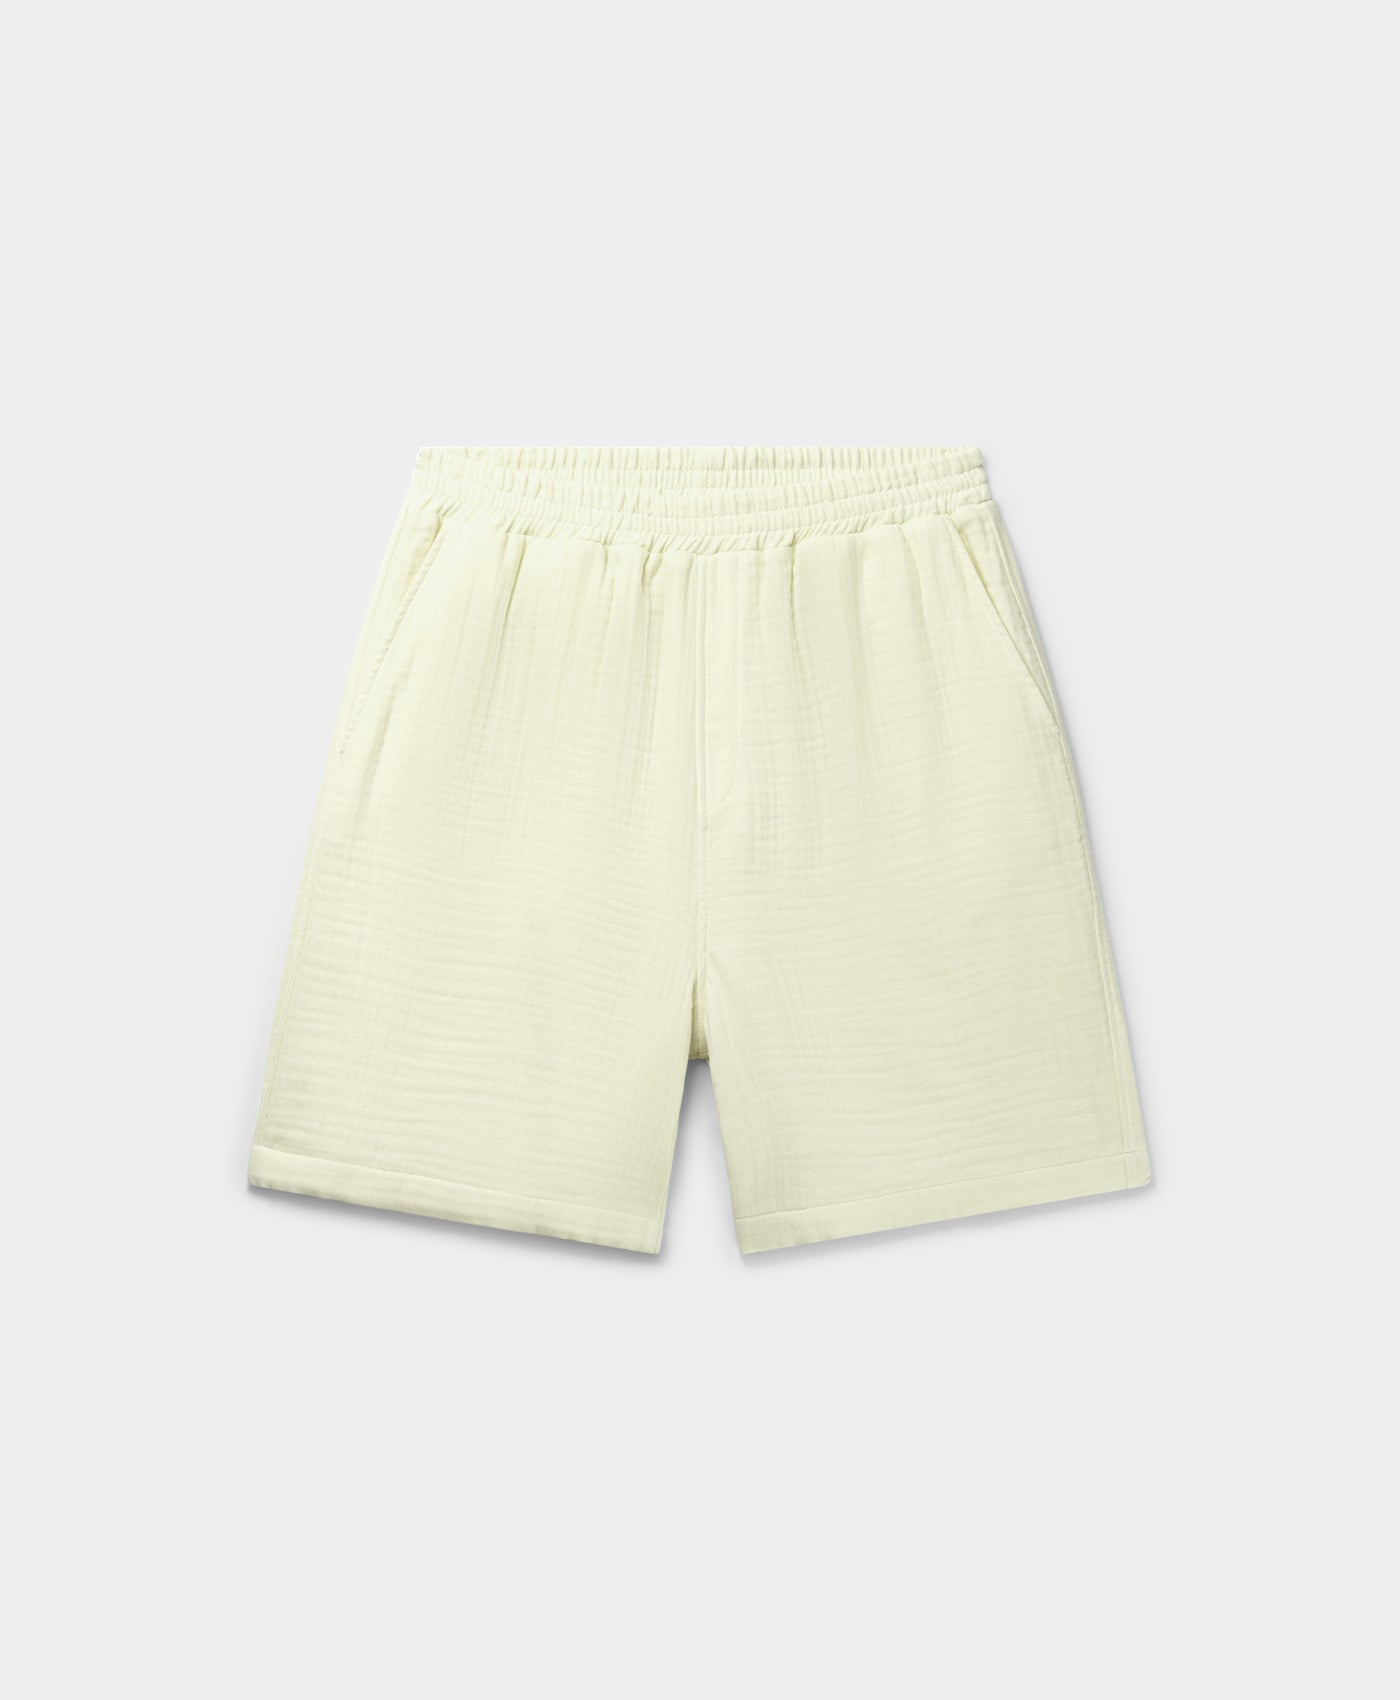 DP - Icing Yellow Enzi Seersucker Shorts - Packshot - Front 